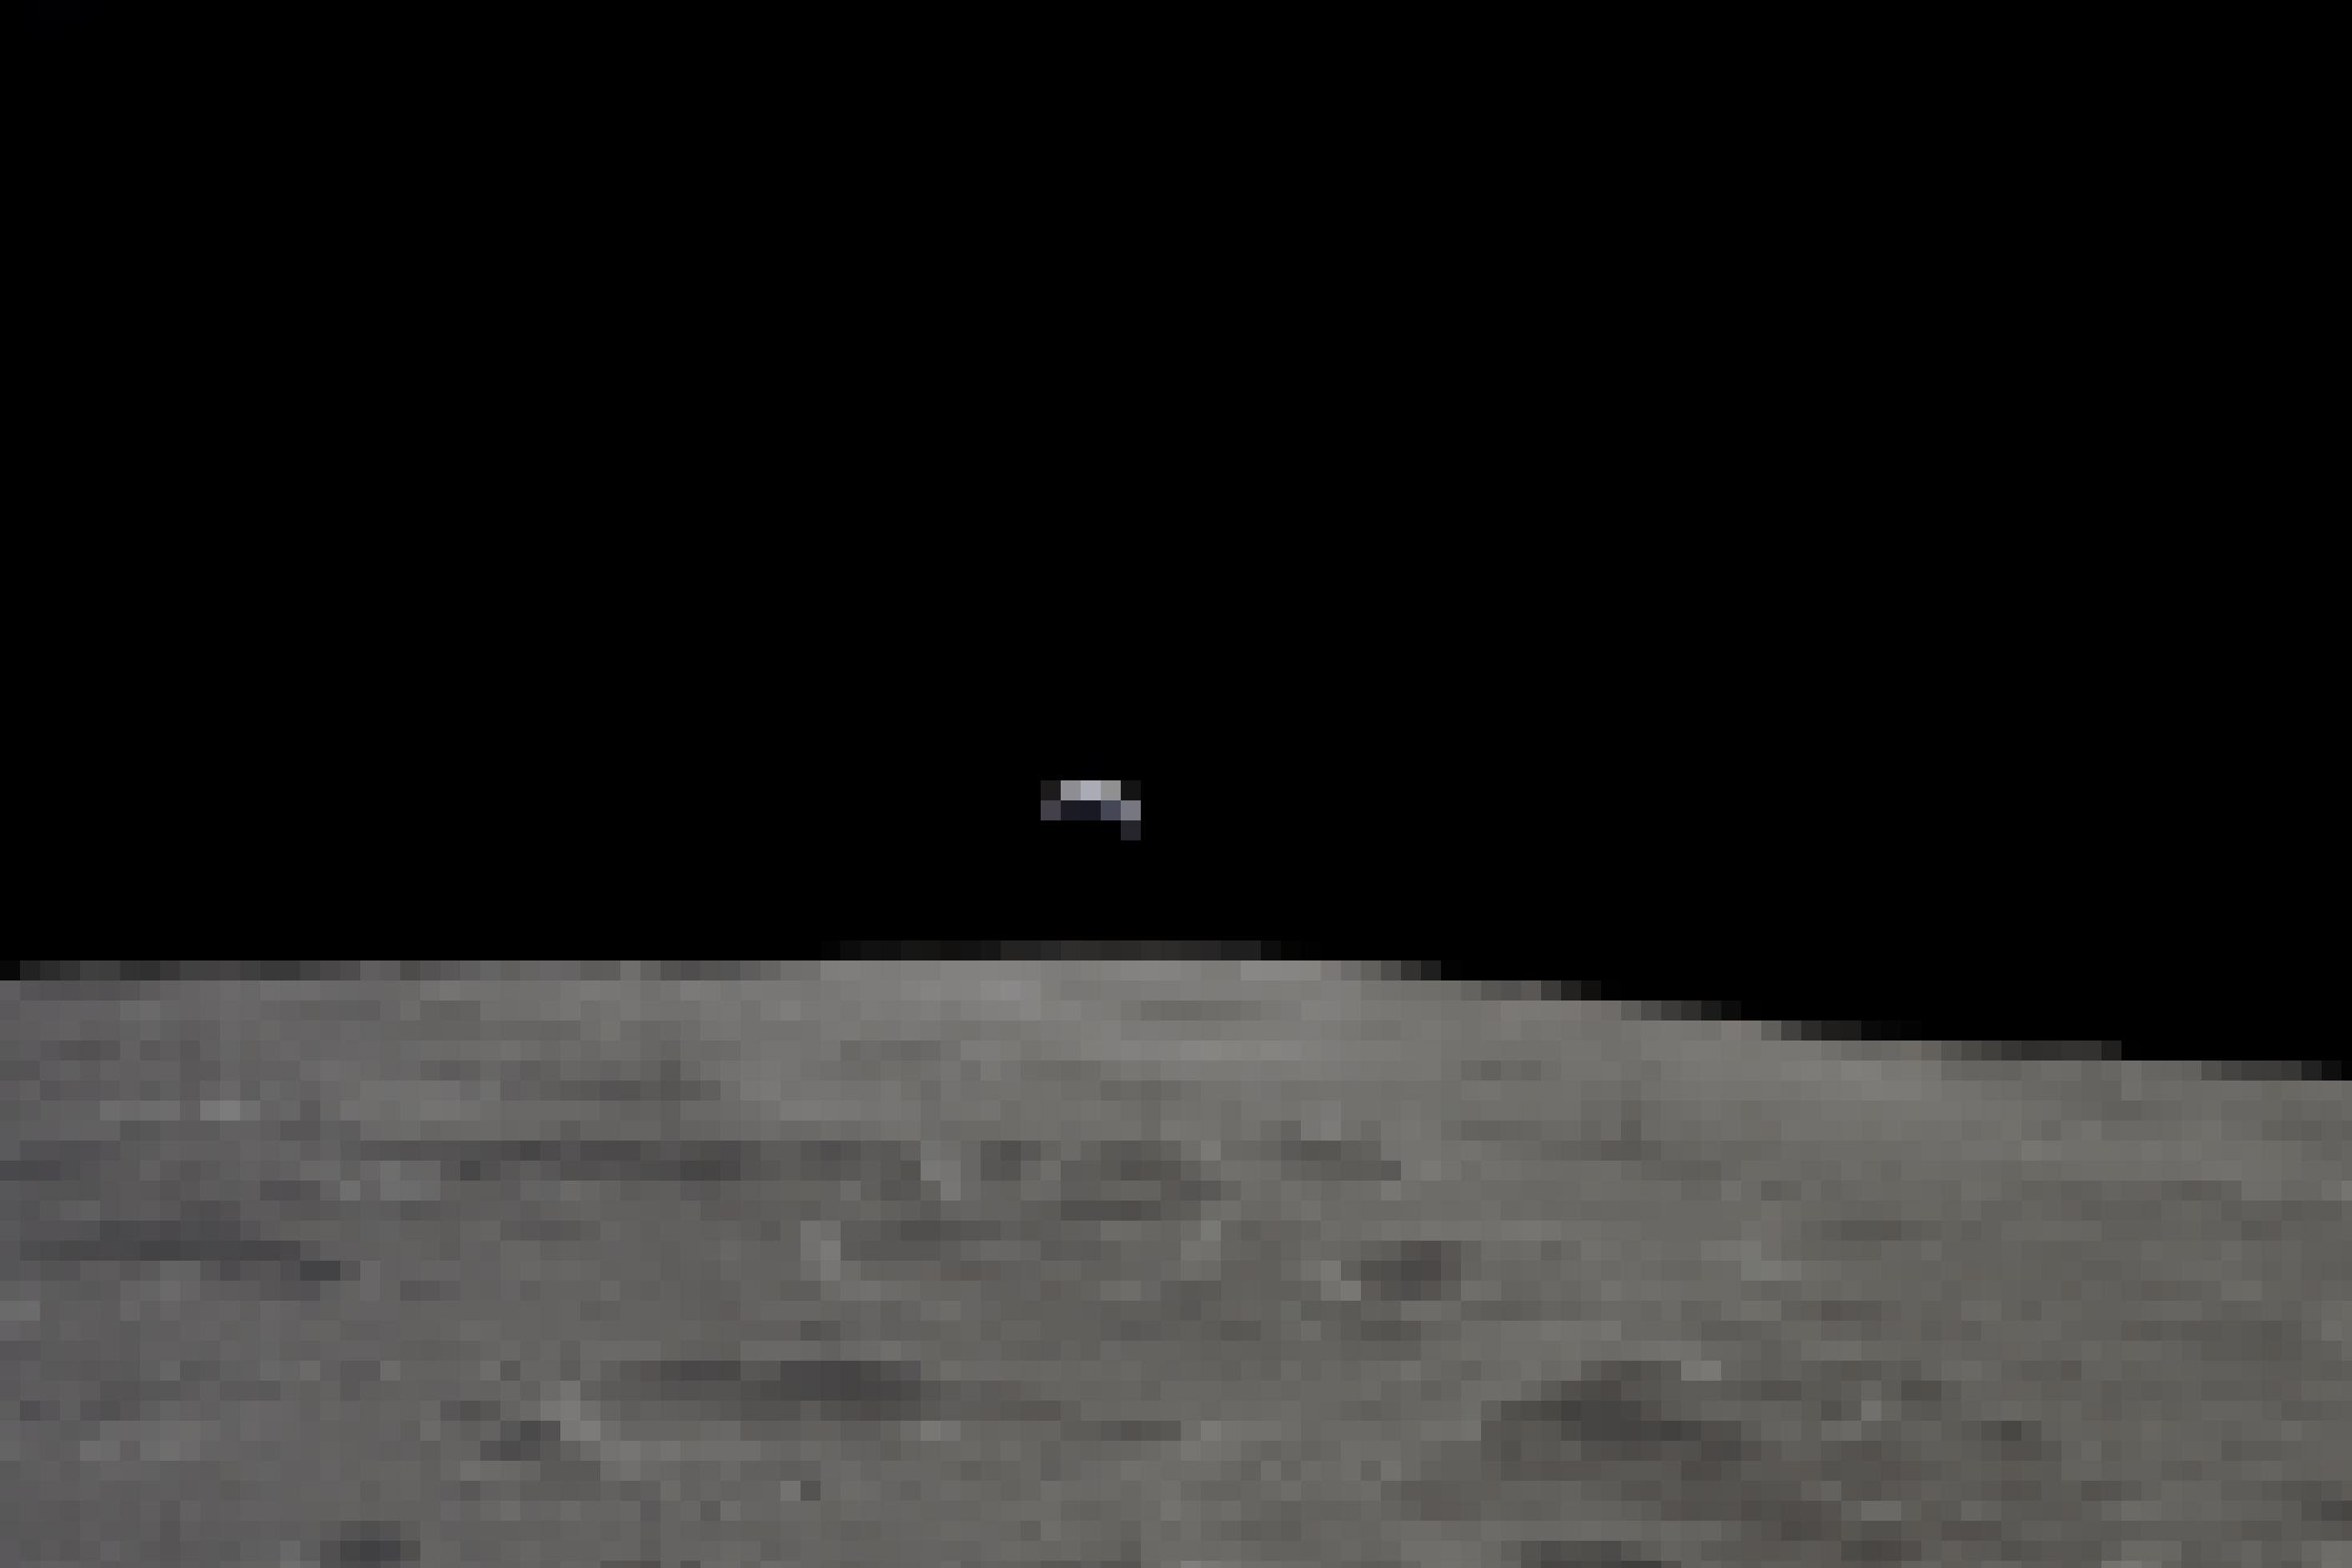 Die graue Oberfläche des Mondes und darüber eine sehr sehr feine Erdsichel, mit dem überwältigendem Schwarz des Weltalls darüber. Das Bild am 19. November 1969 von der Crew von Apollo 12 aus dem Mondorbit aufgenommen.